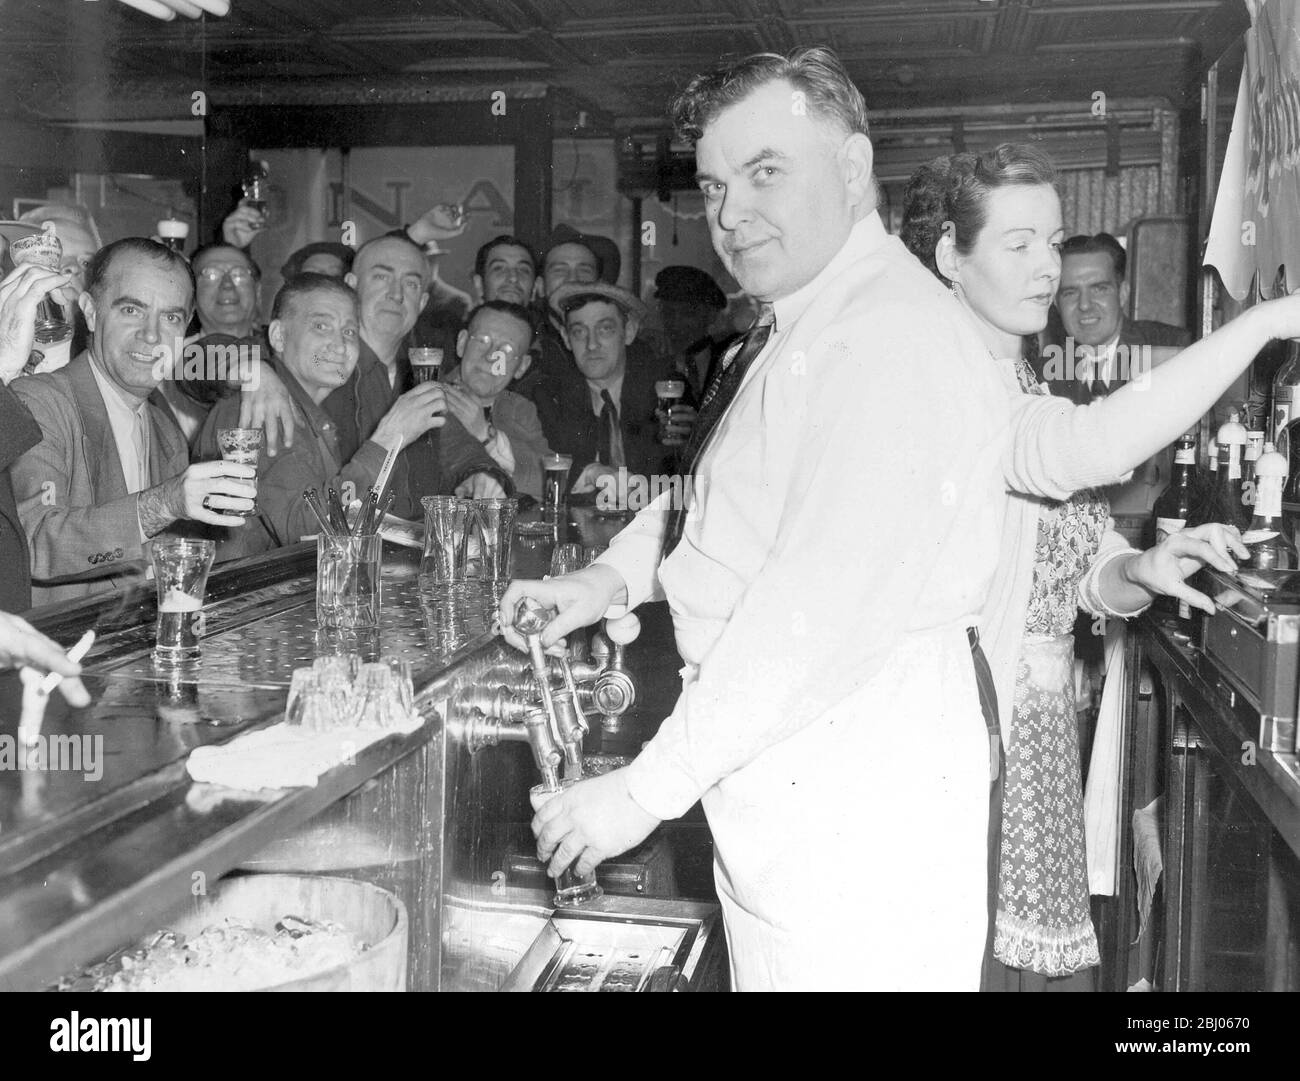 Cinq cents de bières au sam's Bar and Grill sur Saint Marc's place, New York, États-Unis - 25 mars 1945 Banque D'Images